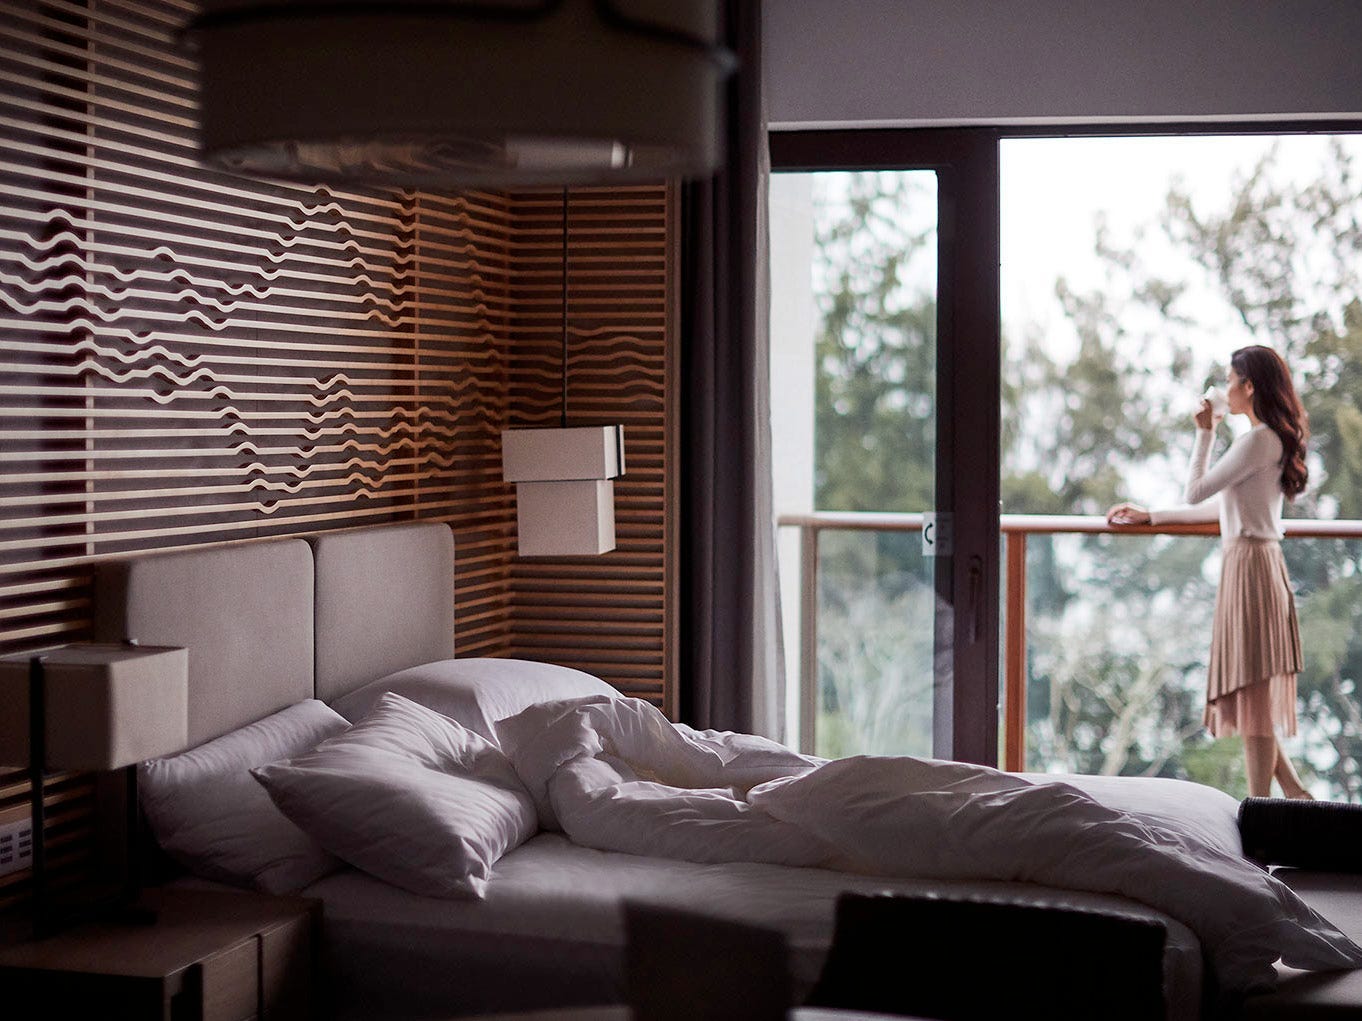 Innenraum eines Marriott-Hotelzimmers mit einem Bett aus weißen Laken und sichtbarer Person draußen auf dem Balkon.